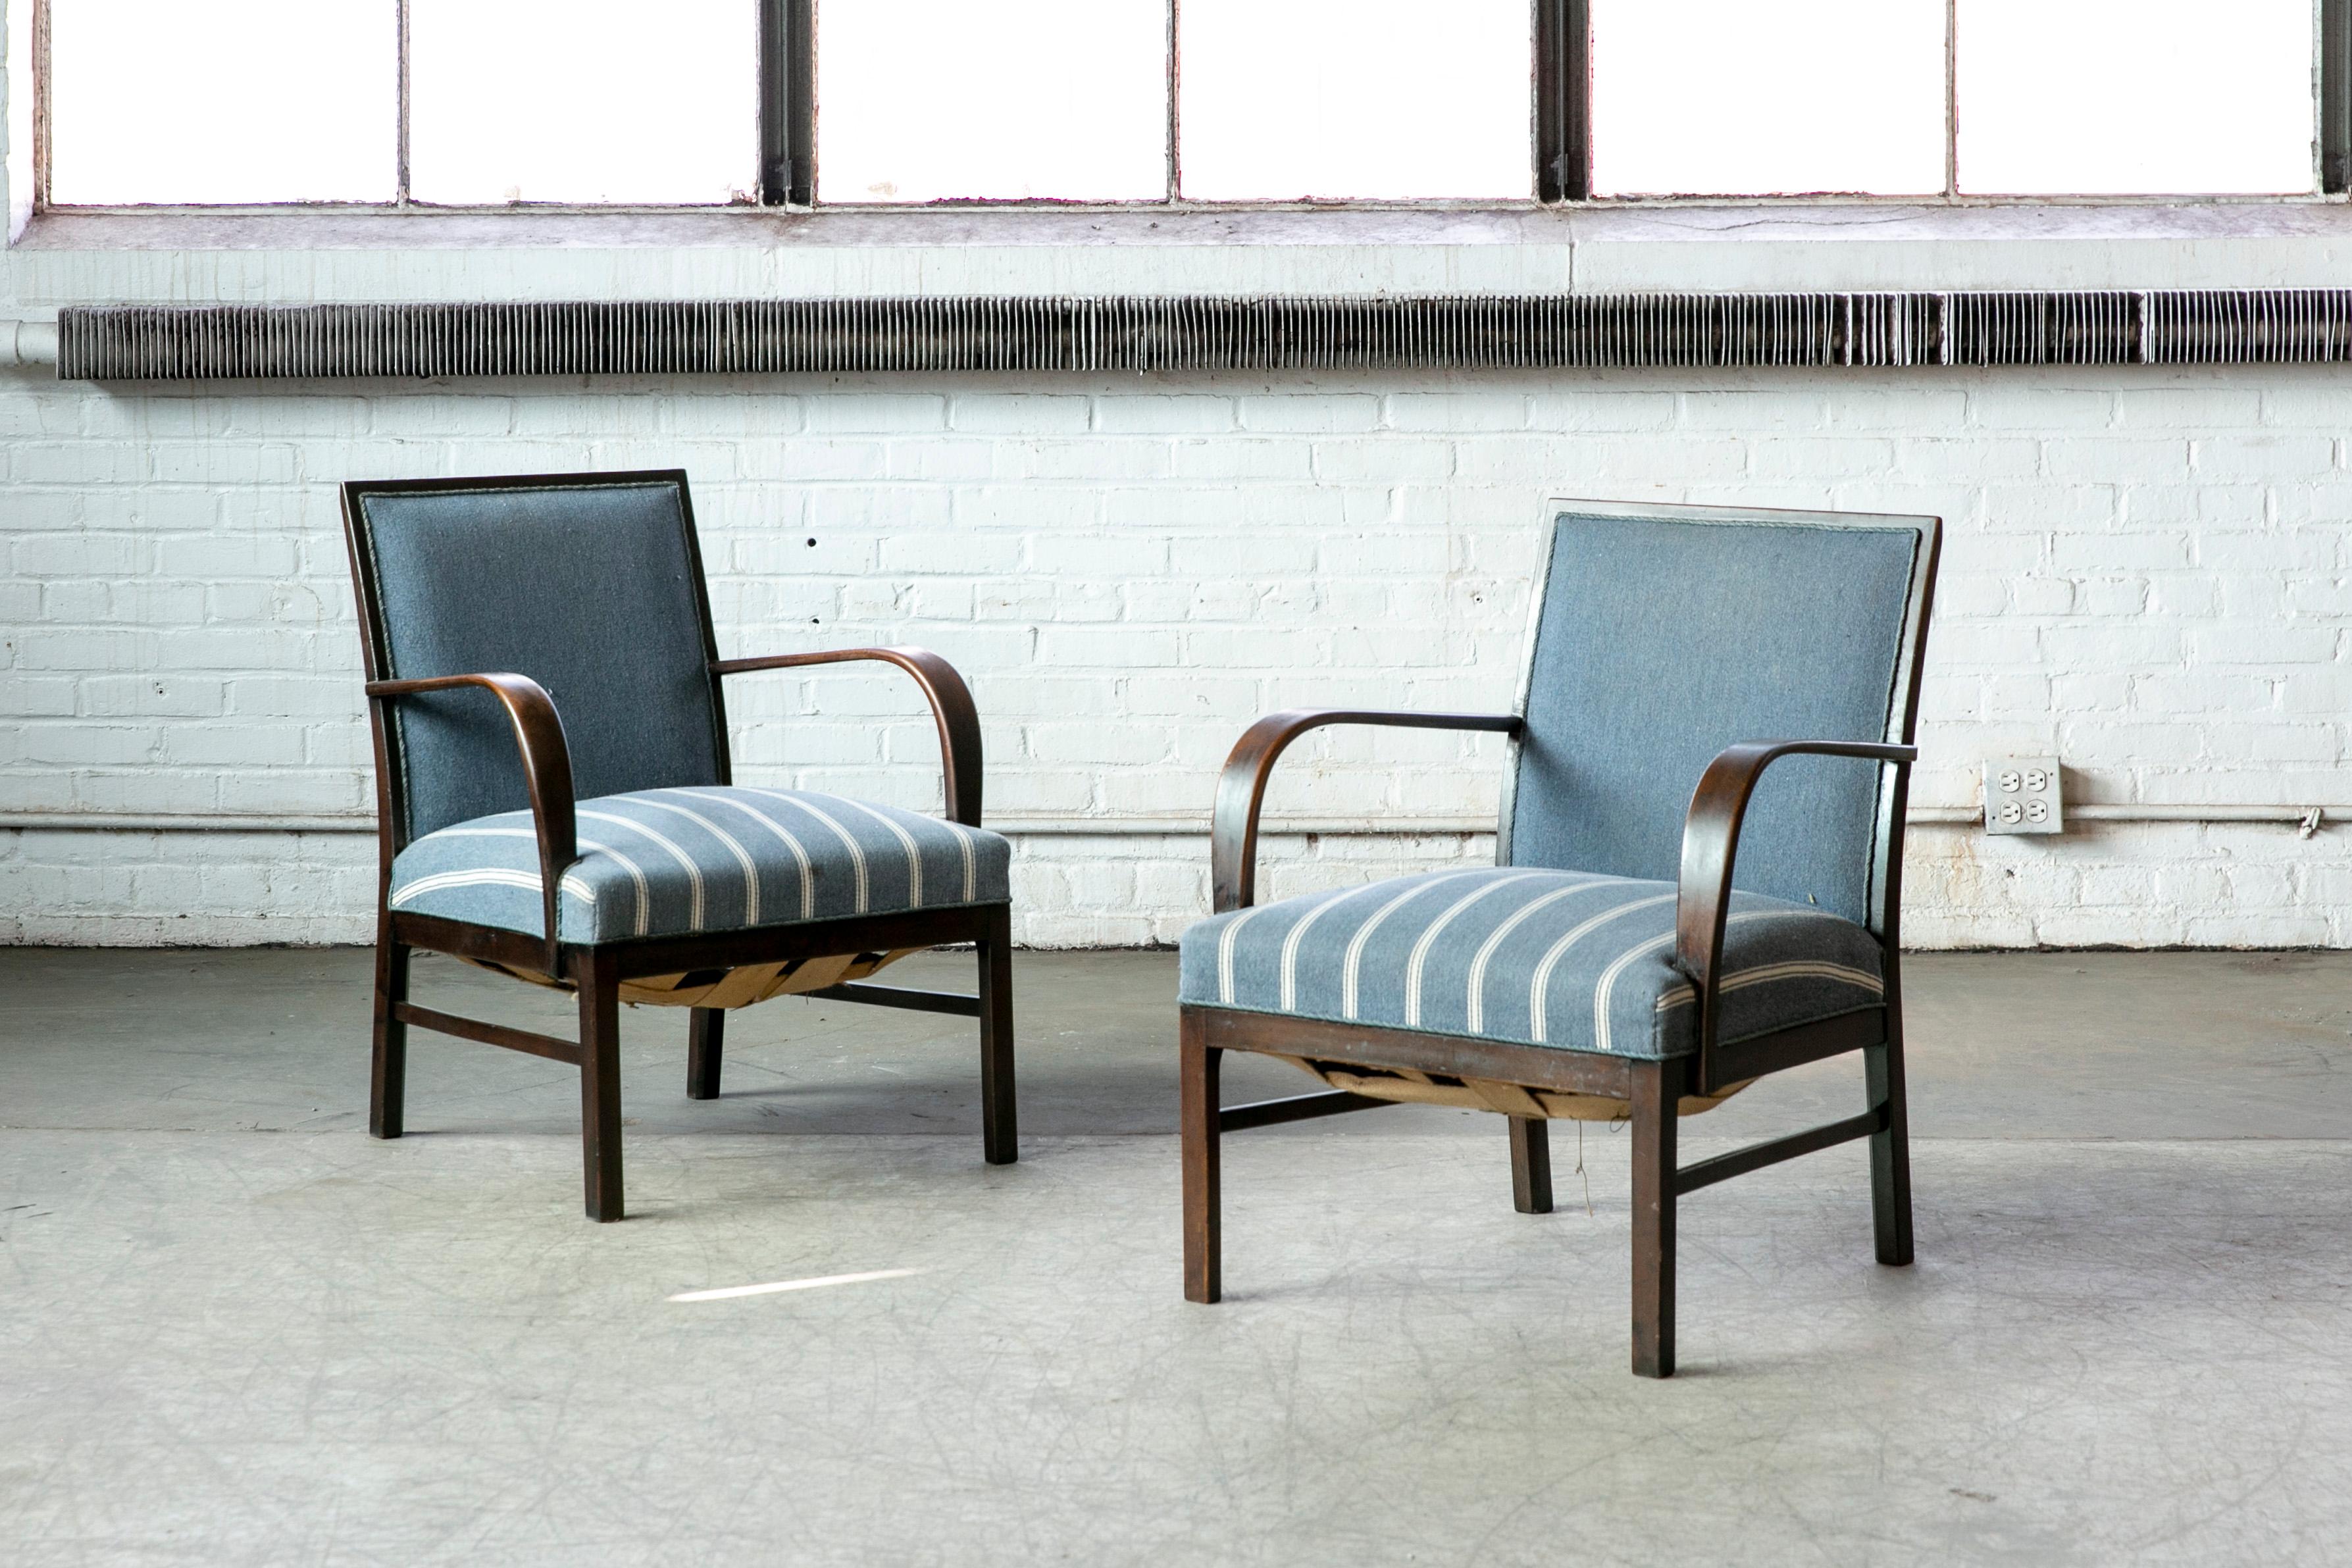 Superbe paire de chaises danoises Art Déco de la fin des années 1930 ou du début des années 1940 avec des coussins à ressorts et de beaux accoudoirs ouverts et des pieds sculptés en acajou massif avec un beau grain et une belle patine. Nous adorons